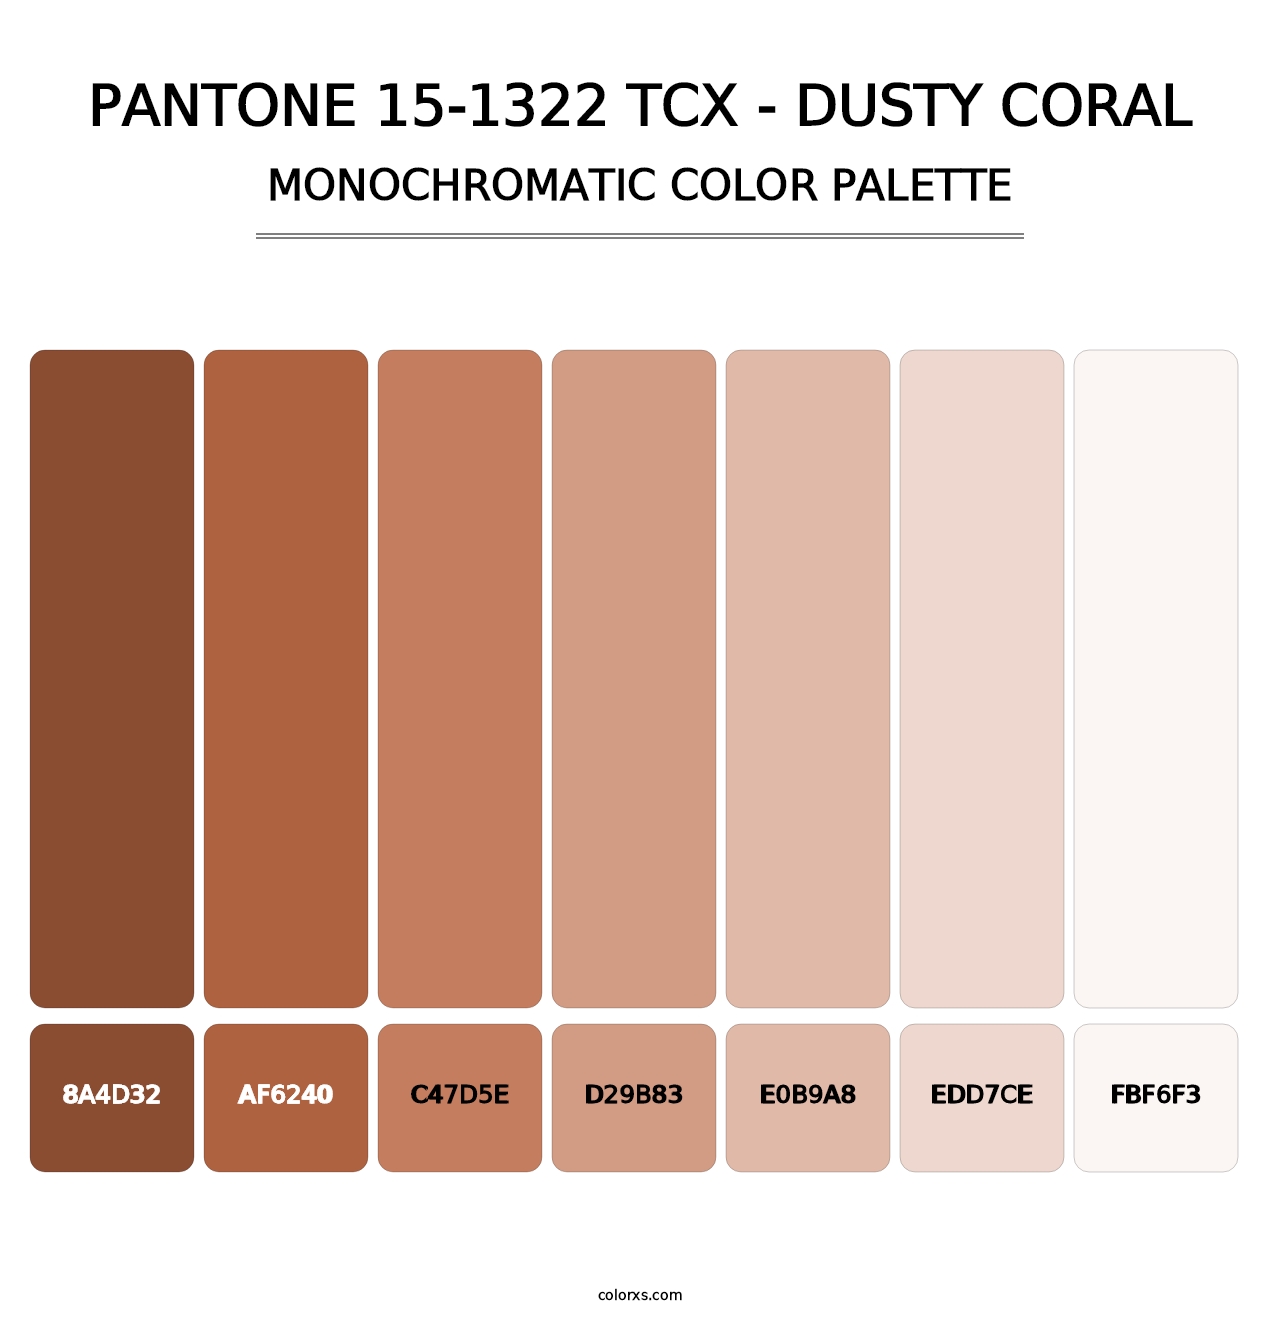 PANTONE 15-1322 TCX - Dusty Coral - Monochromatic Color Palette